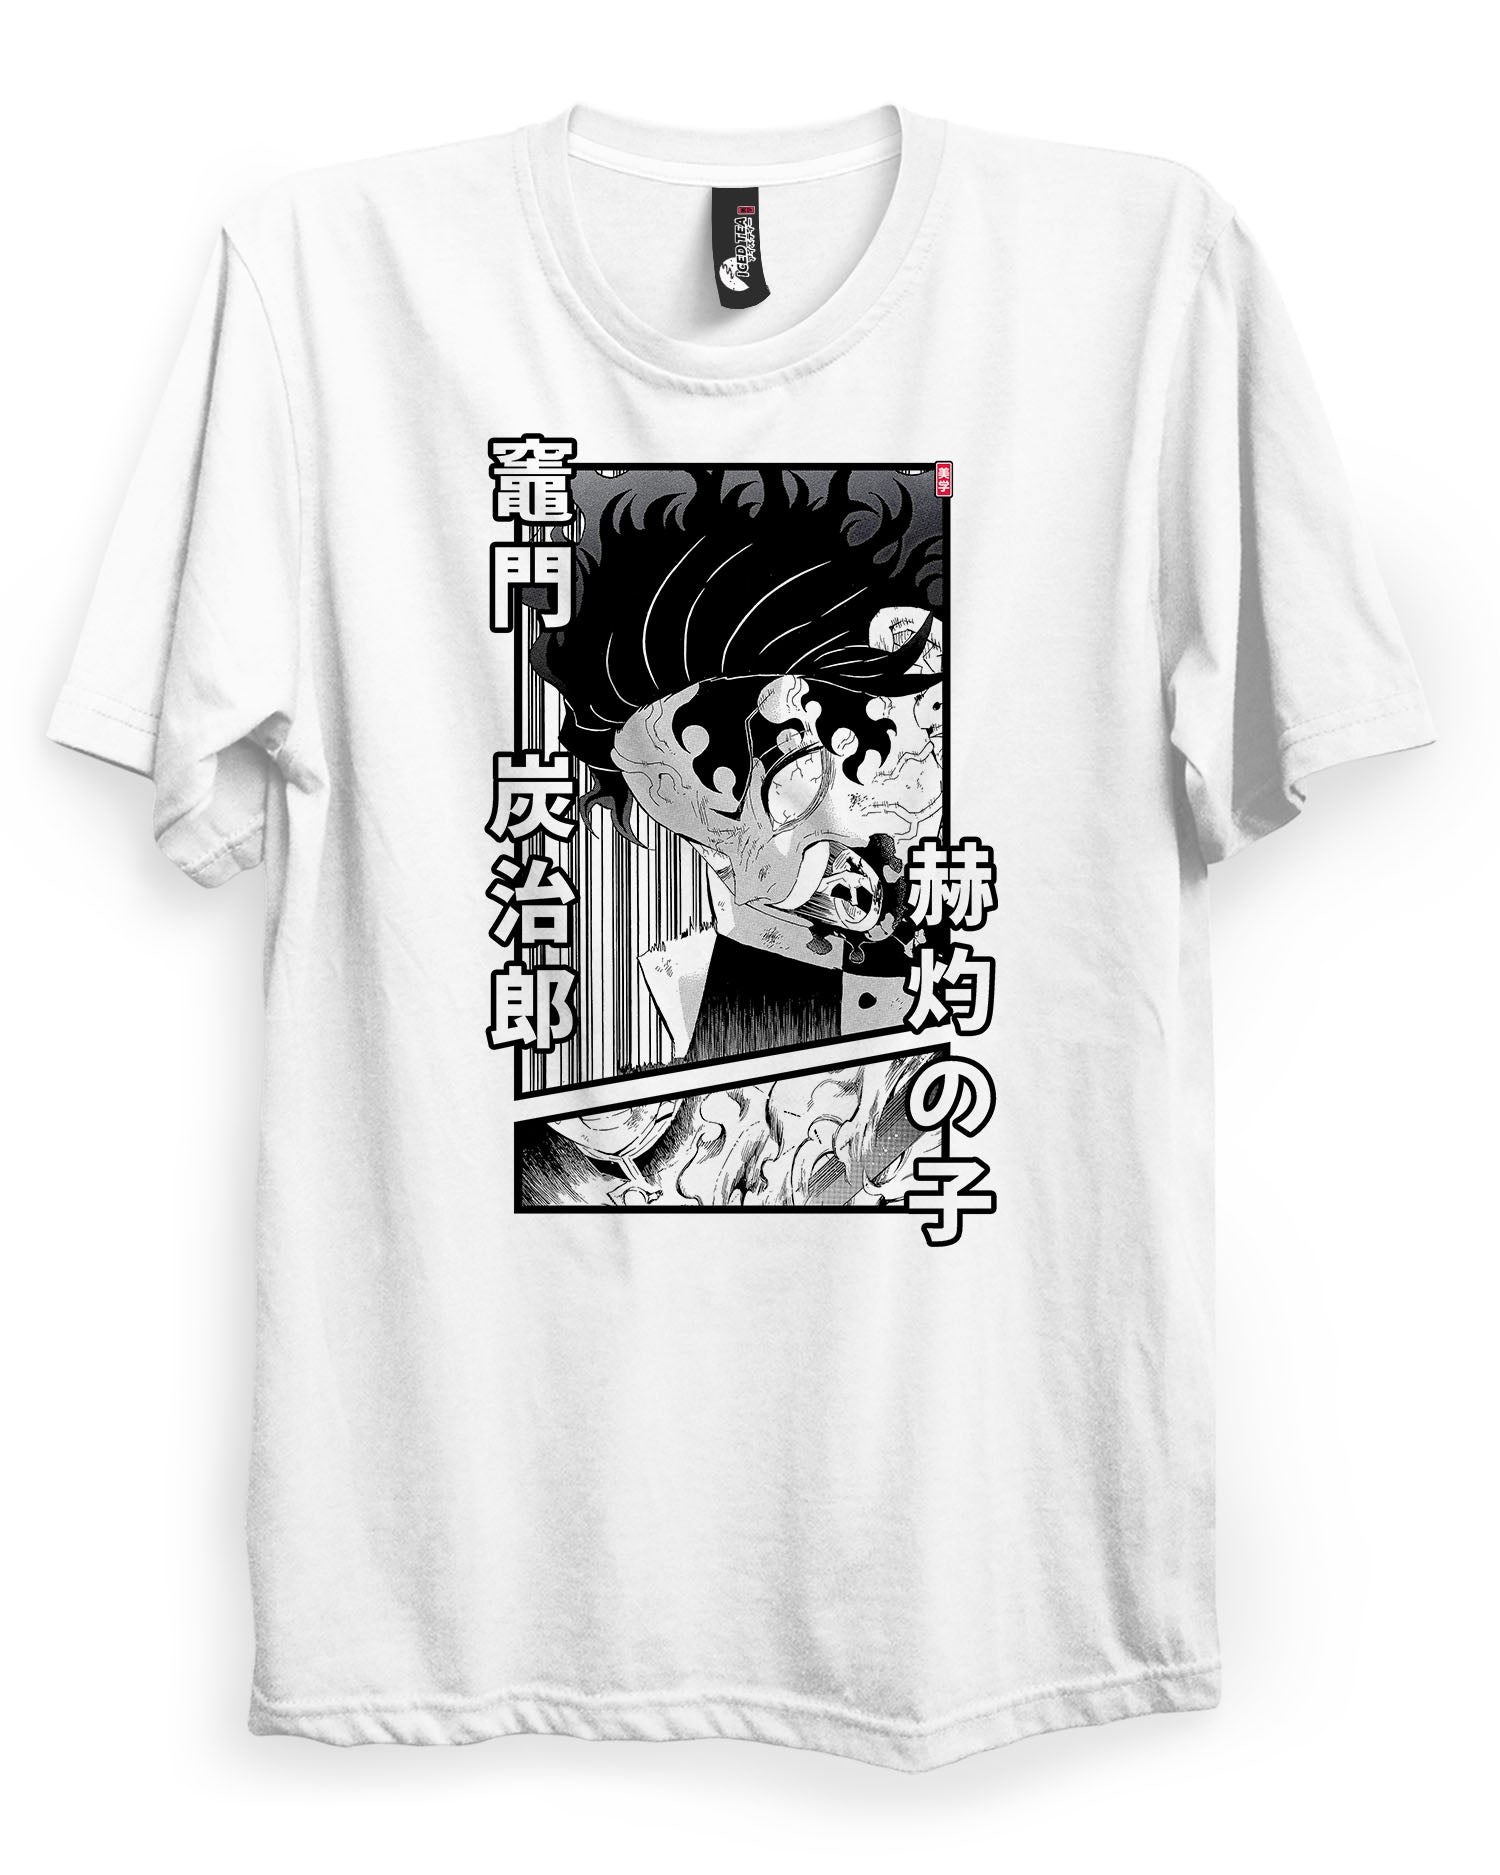 Tanjiro (Child of Brightness) - T-Shirt